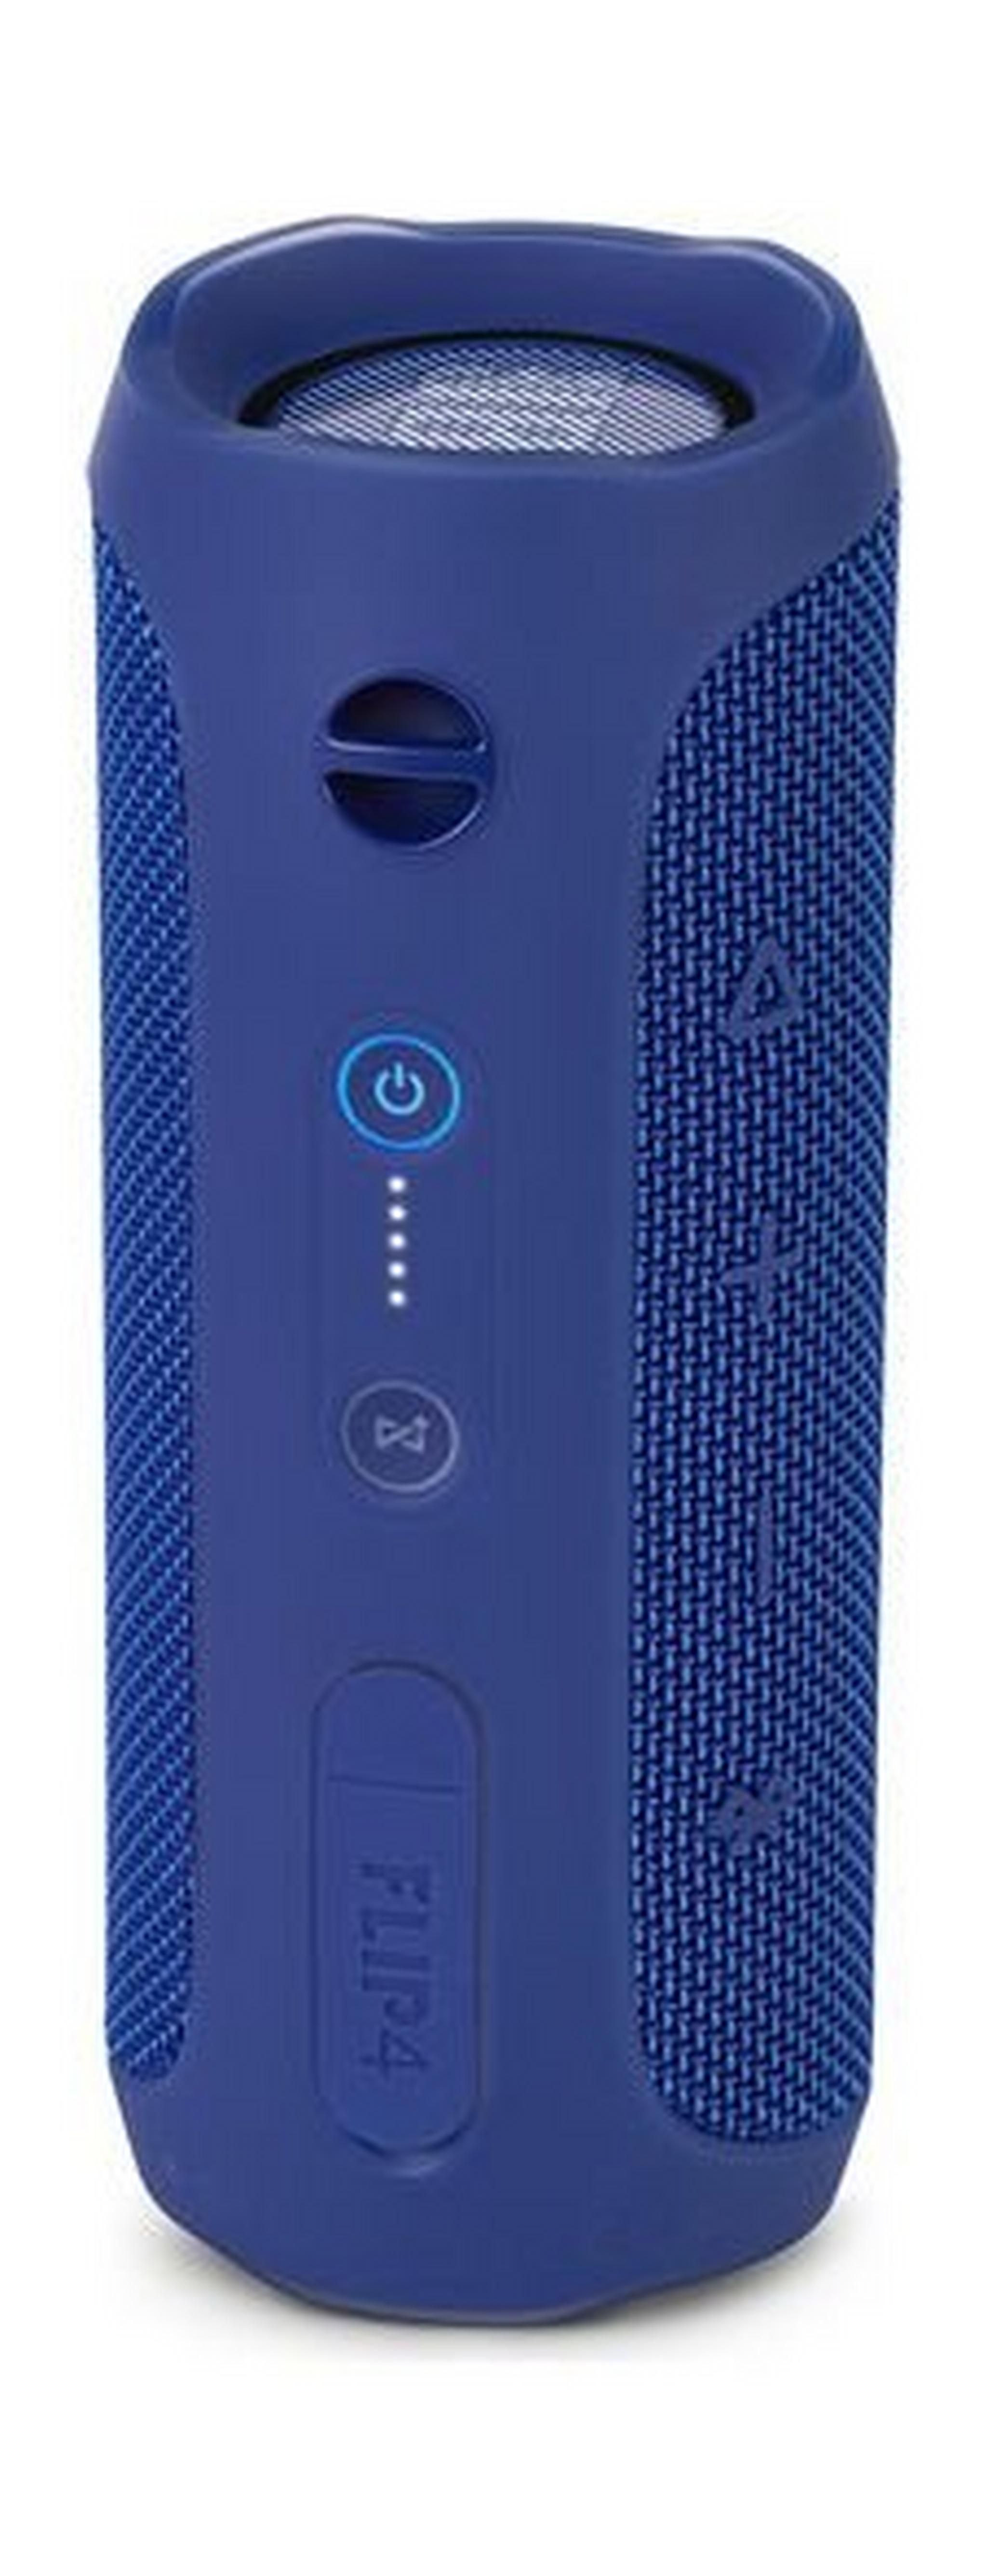 مكبرات الصوت جي بي إل فليب ٤ المضادة للماء بتقنية البلوتوث – أزرق غامق (JBLFLIP4BLU)